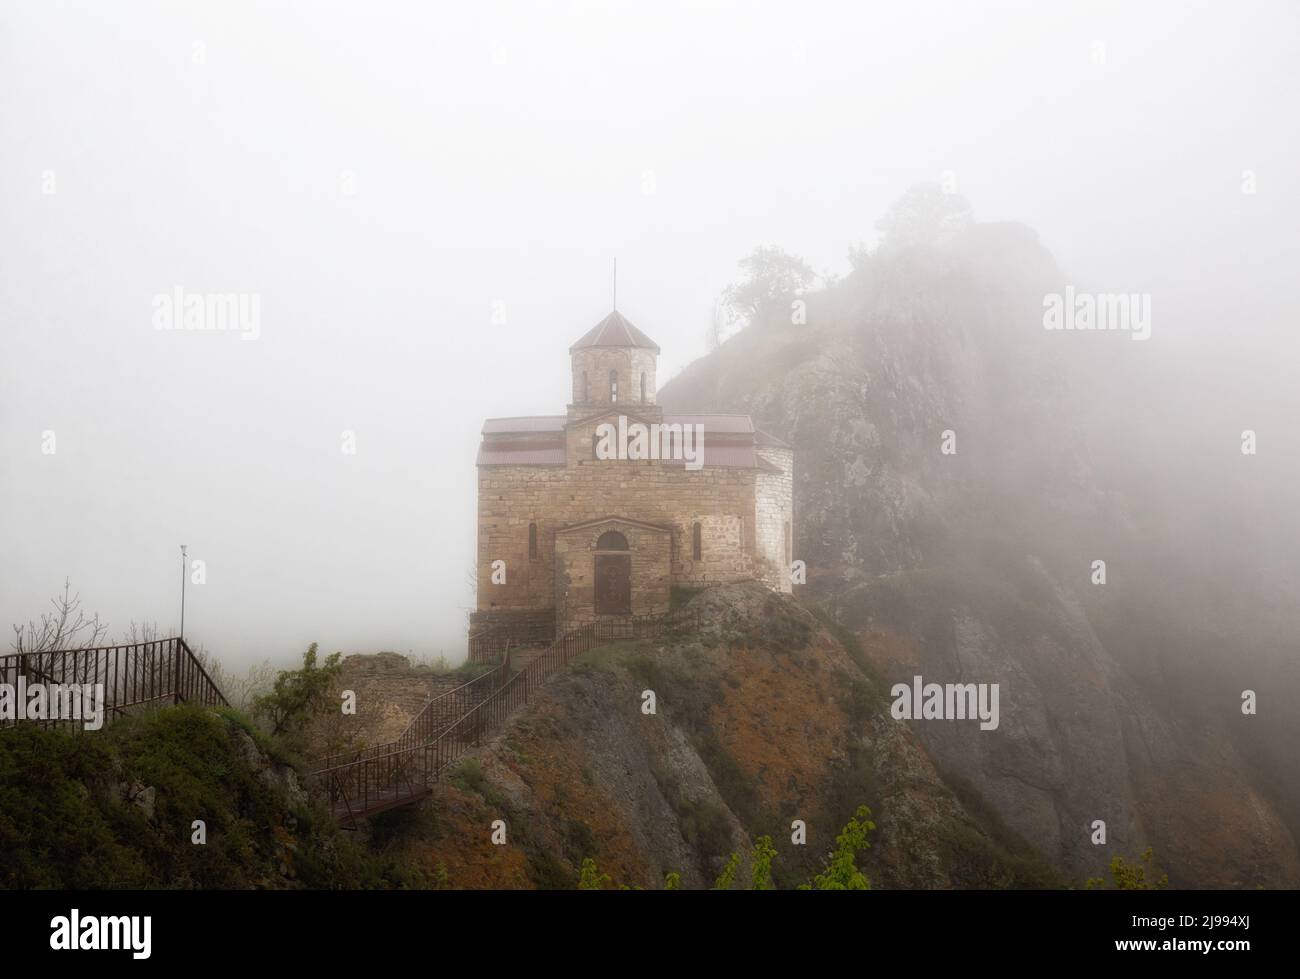 Antigua iglesia Shoana del siglo 10th en la cima de una cadena montañosa en densa niebla Foto de stock